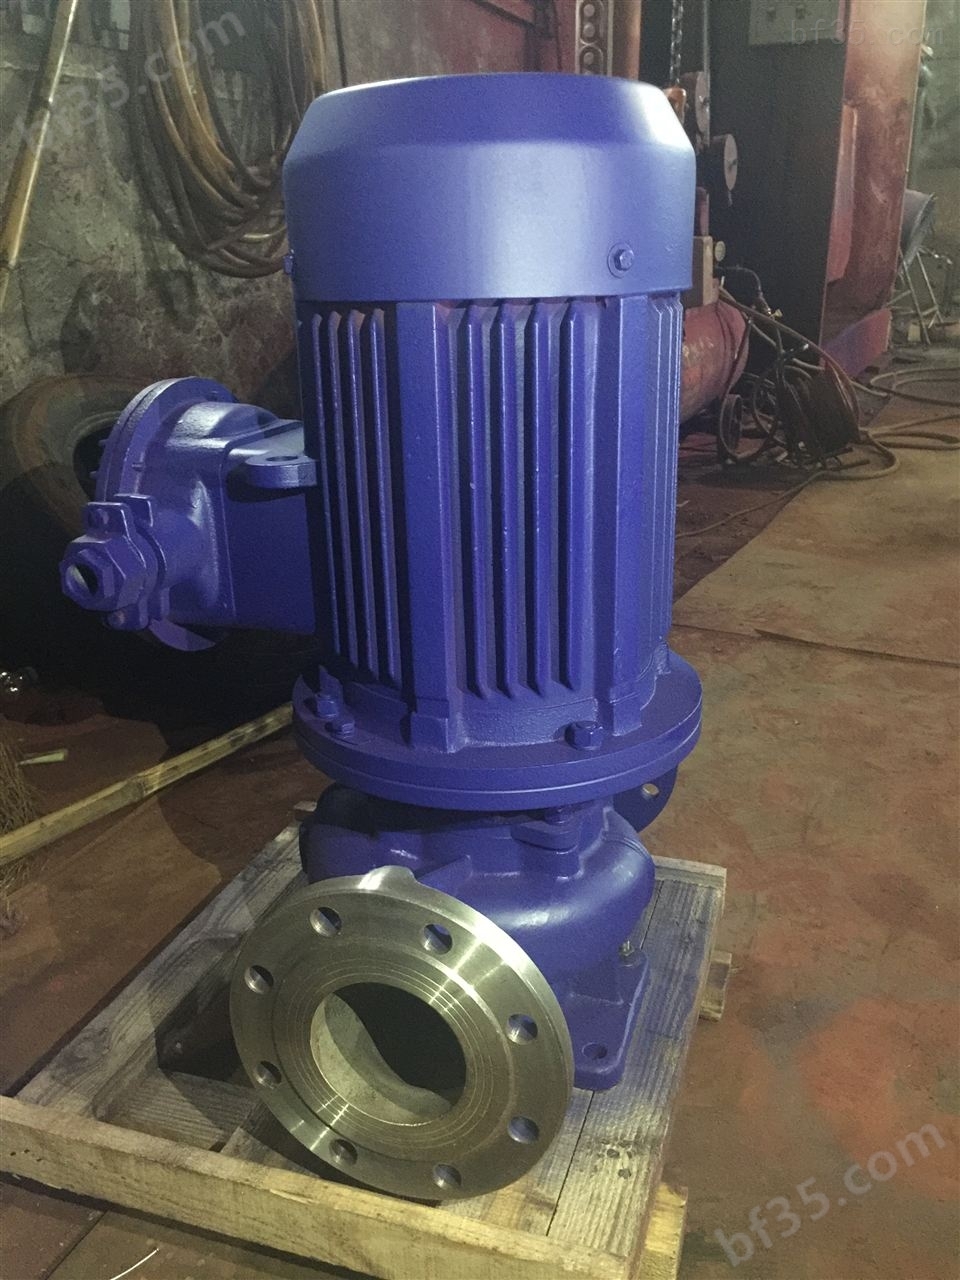 供应YG32-160A立式节能输油泵,立式循环油泵,管道油泵参数